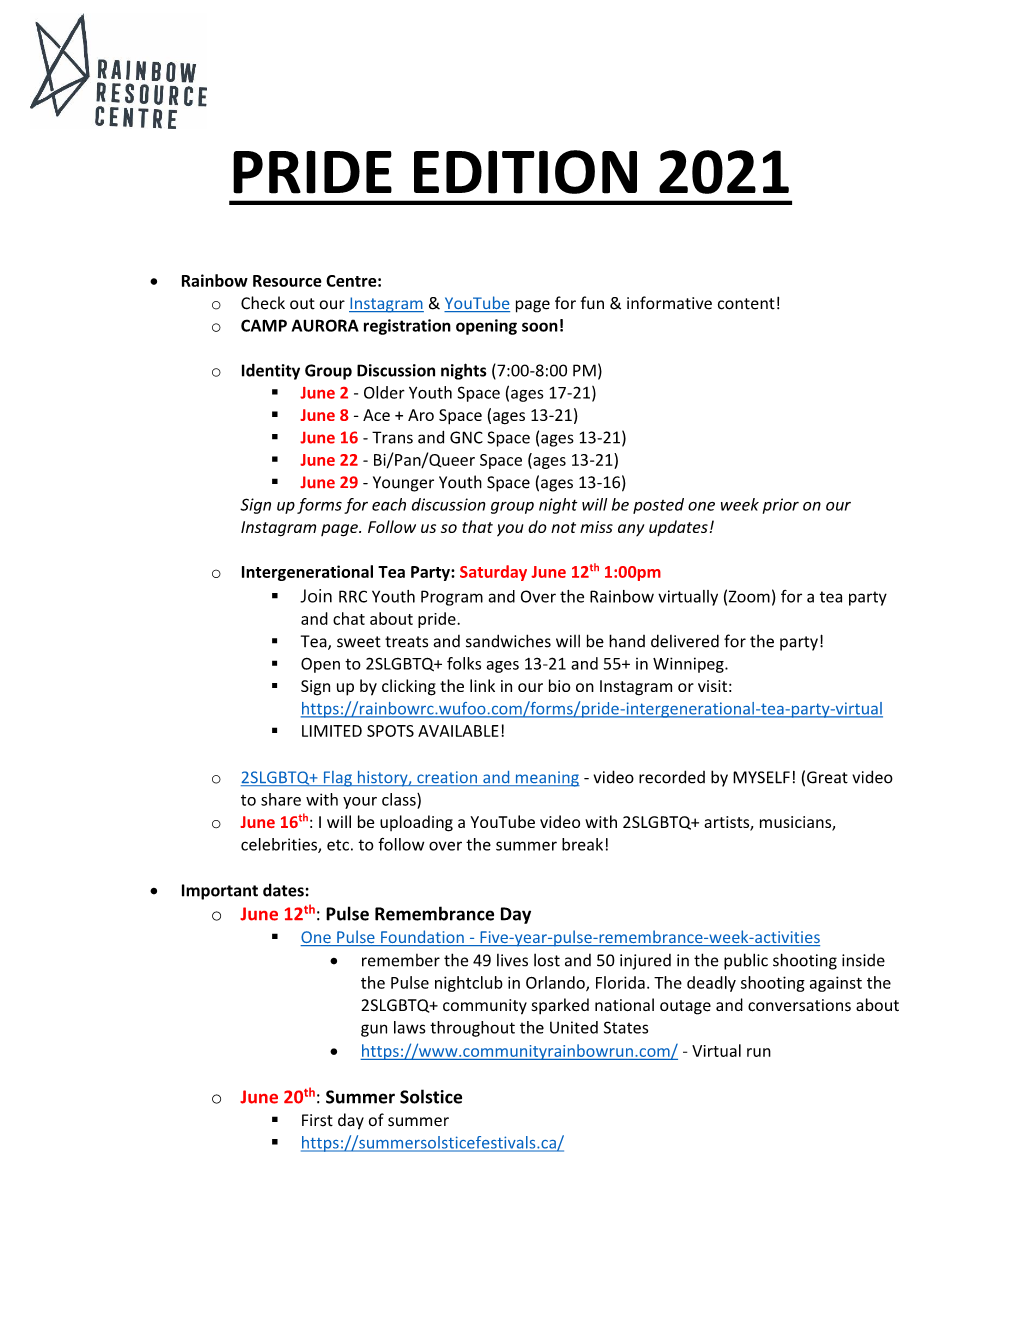 Pride Edition 2021